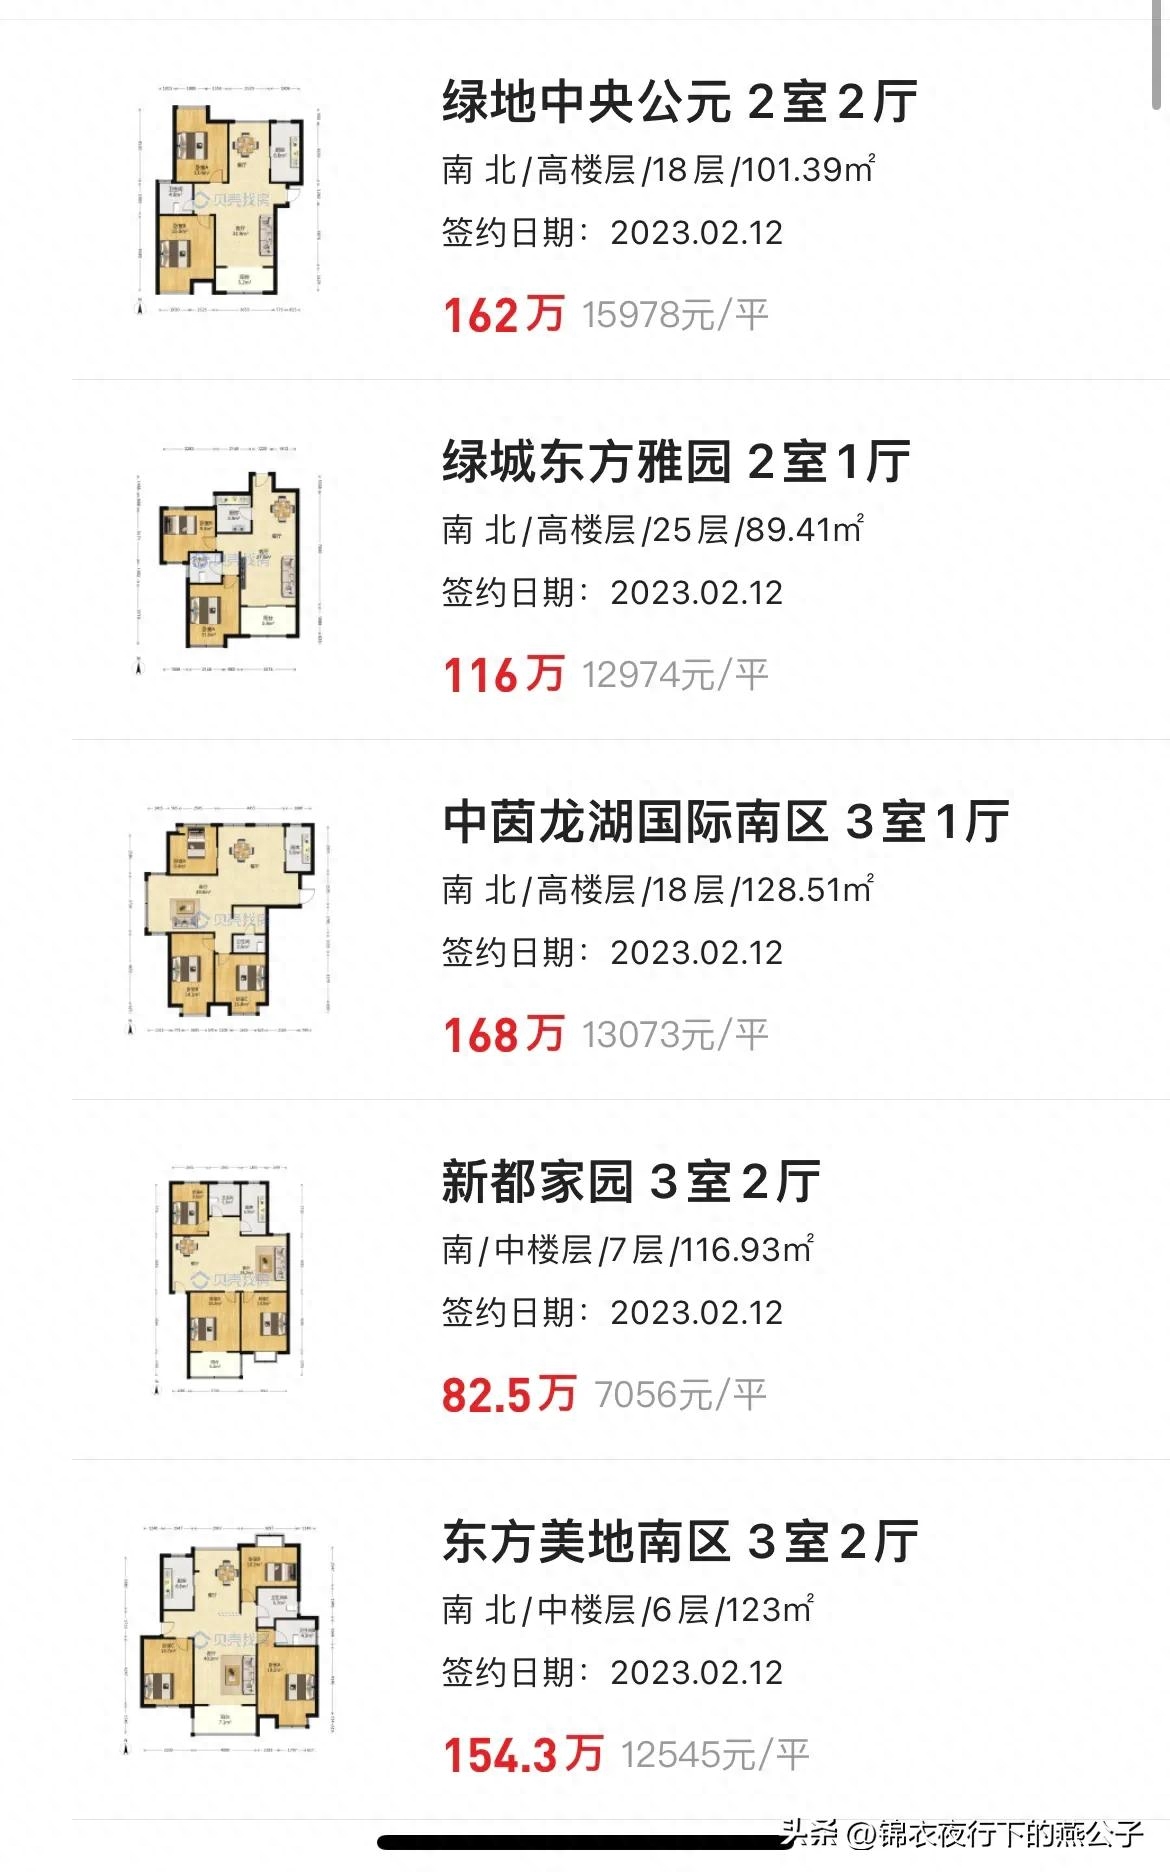 上海绿地世纪城房价多少_上海绿地世纪城一期二手房价格_绿地世纪城二期 上海 价格